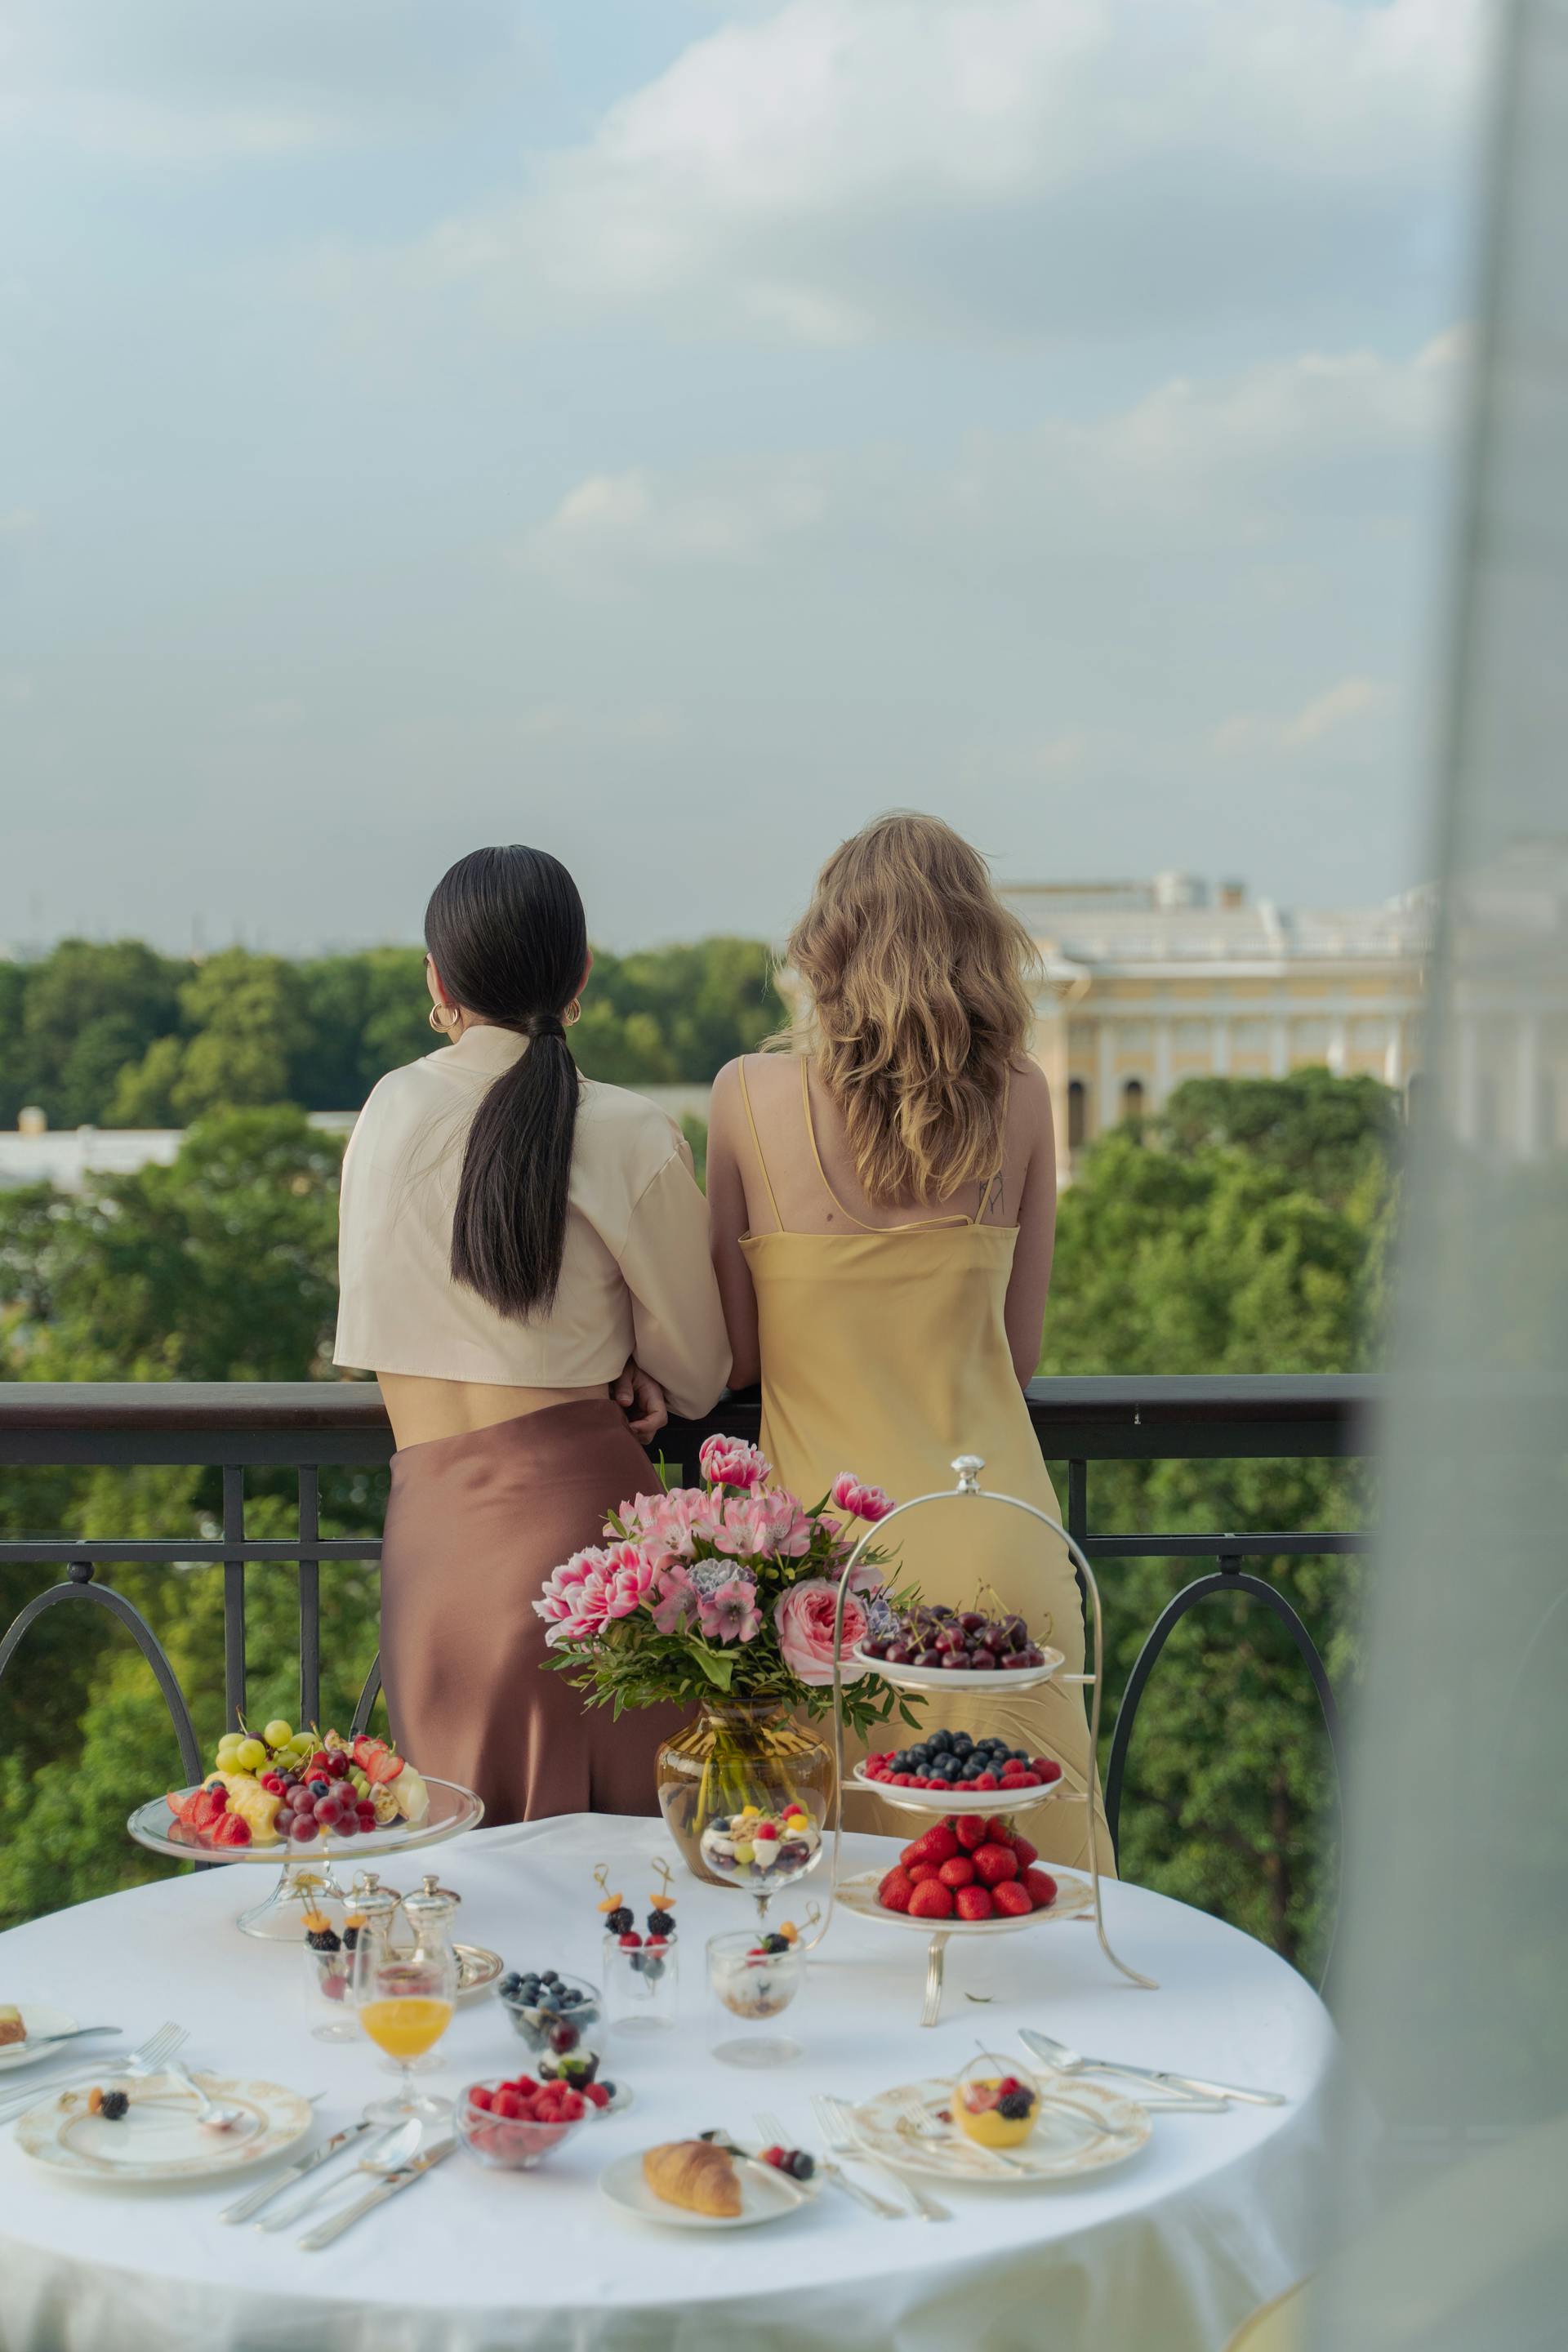 Vue de dos de femmes debout sur un balcon | Source : Pexels